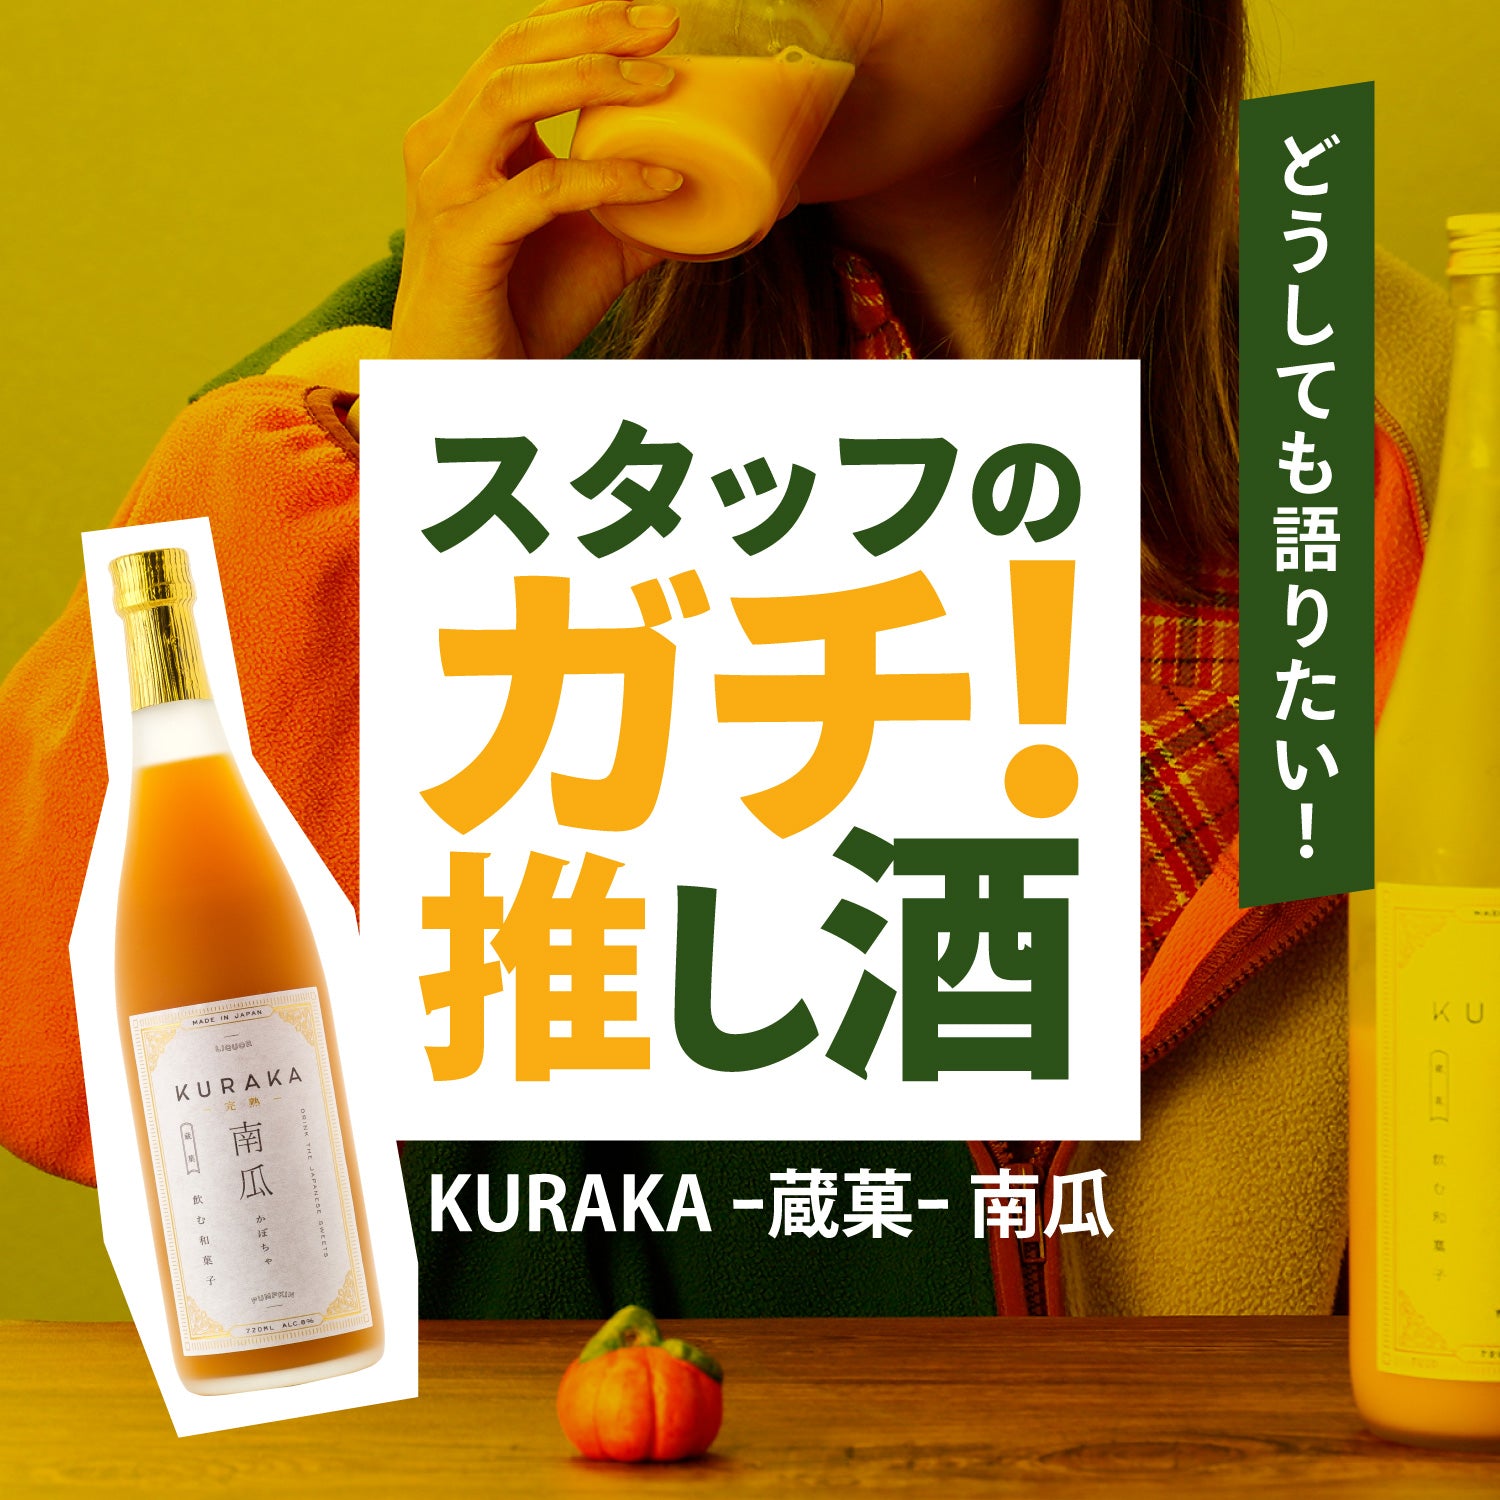 スタッフのガチ推し酒「KURAKA -蔵菓- 南瓜」